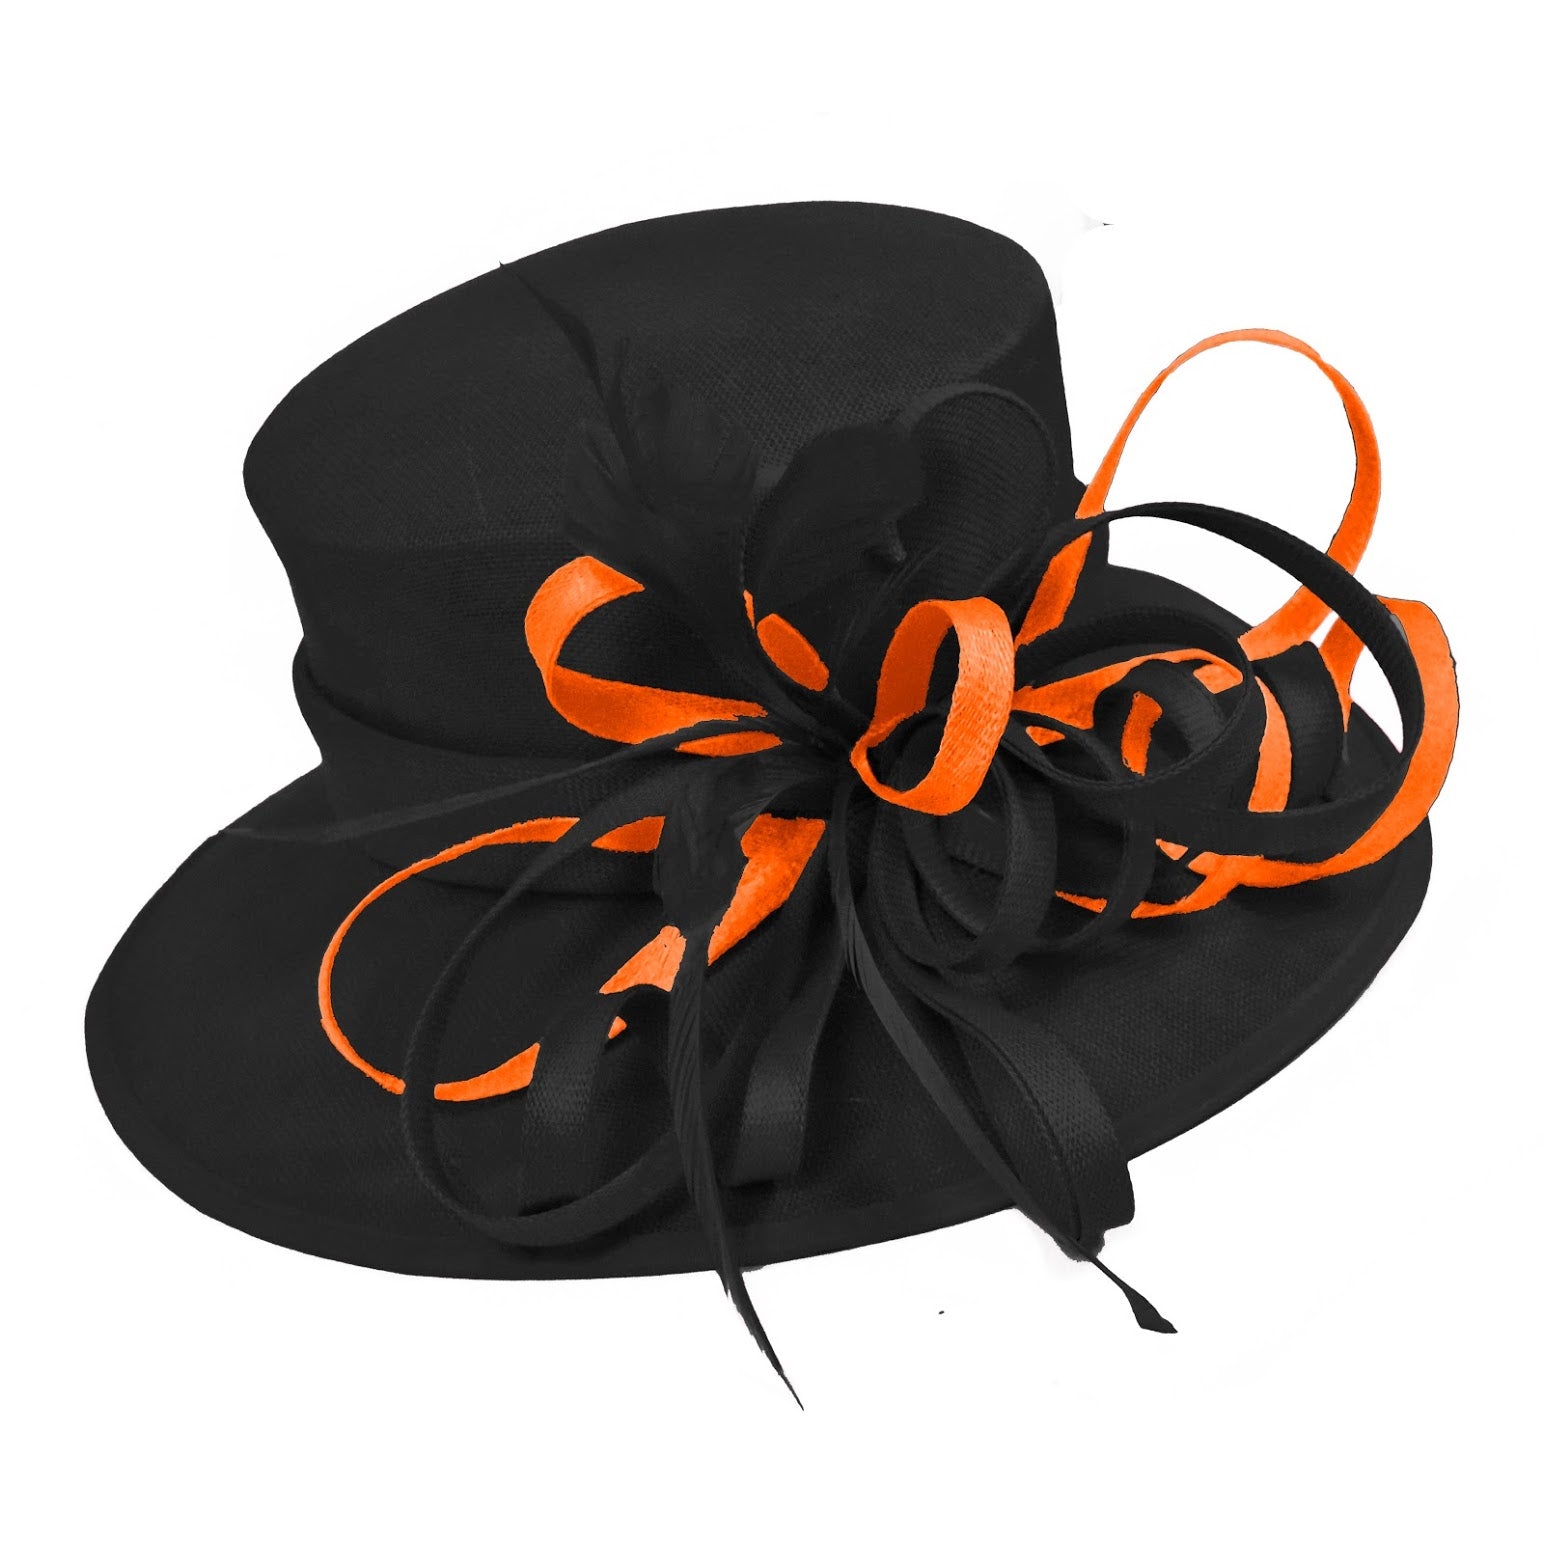 Noir et orange brûlé grand chapeau à bord de reine occasion Hatinator bibi mariages formels